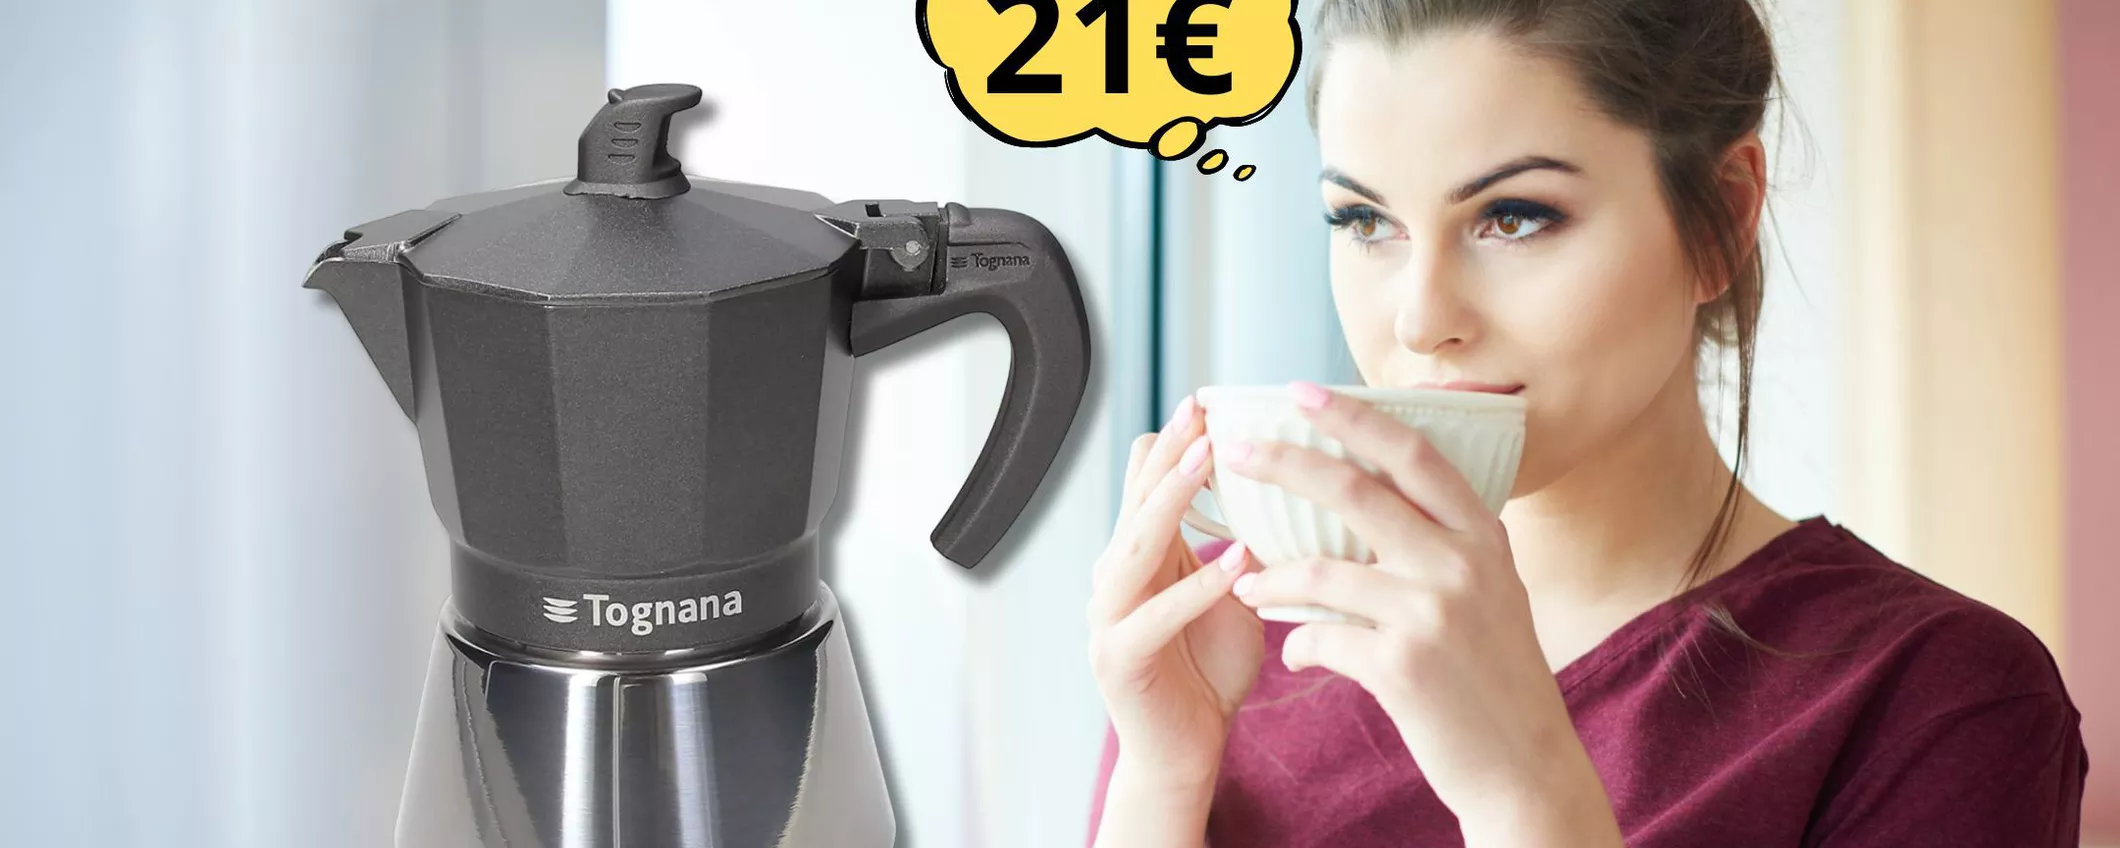 Moka Tognana a soli 21 euro: realizza un ottimo caffè grazie alla funzione 